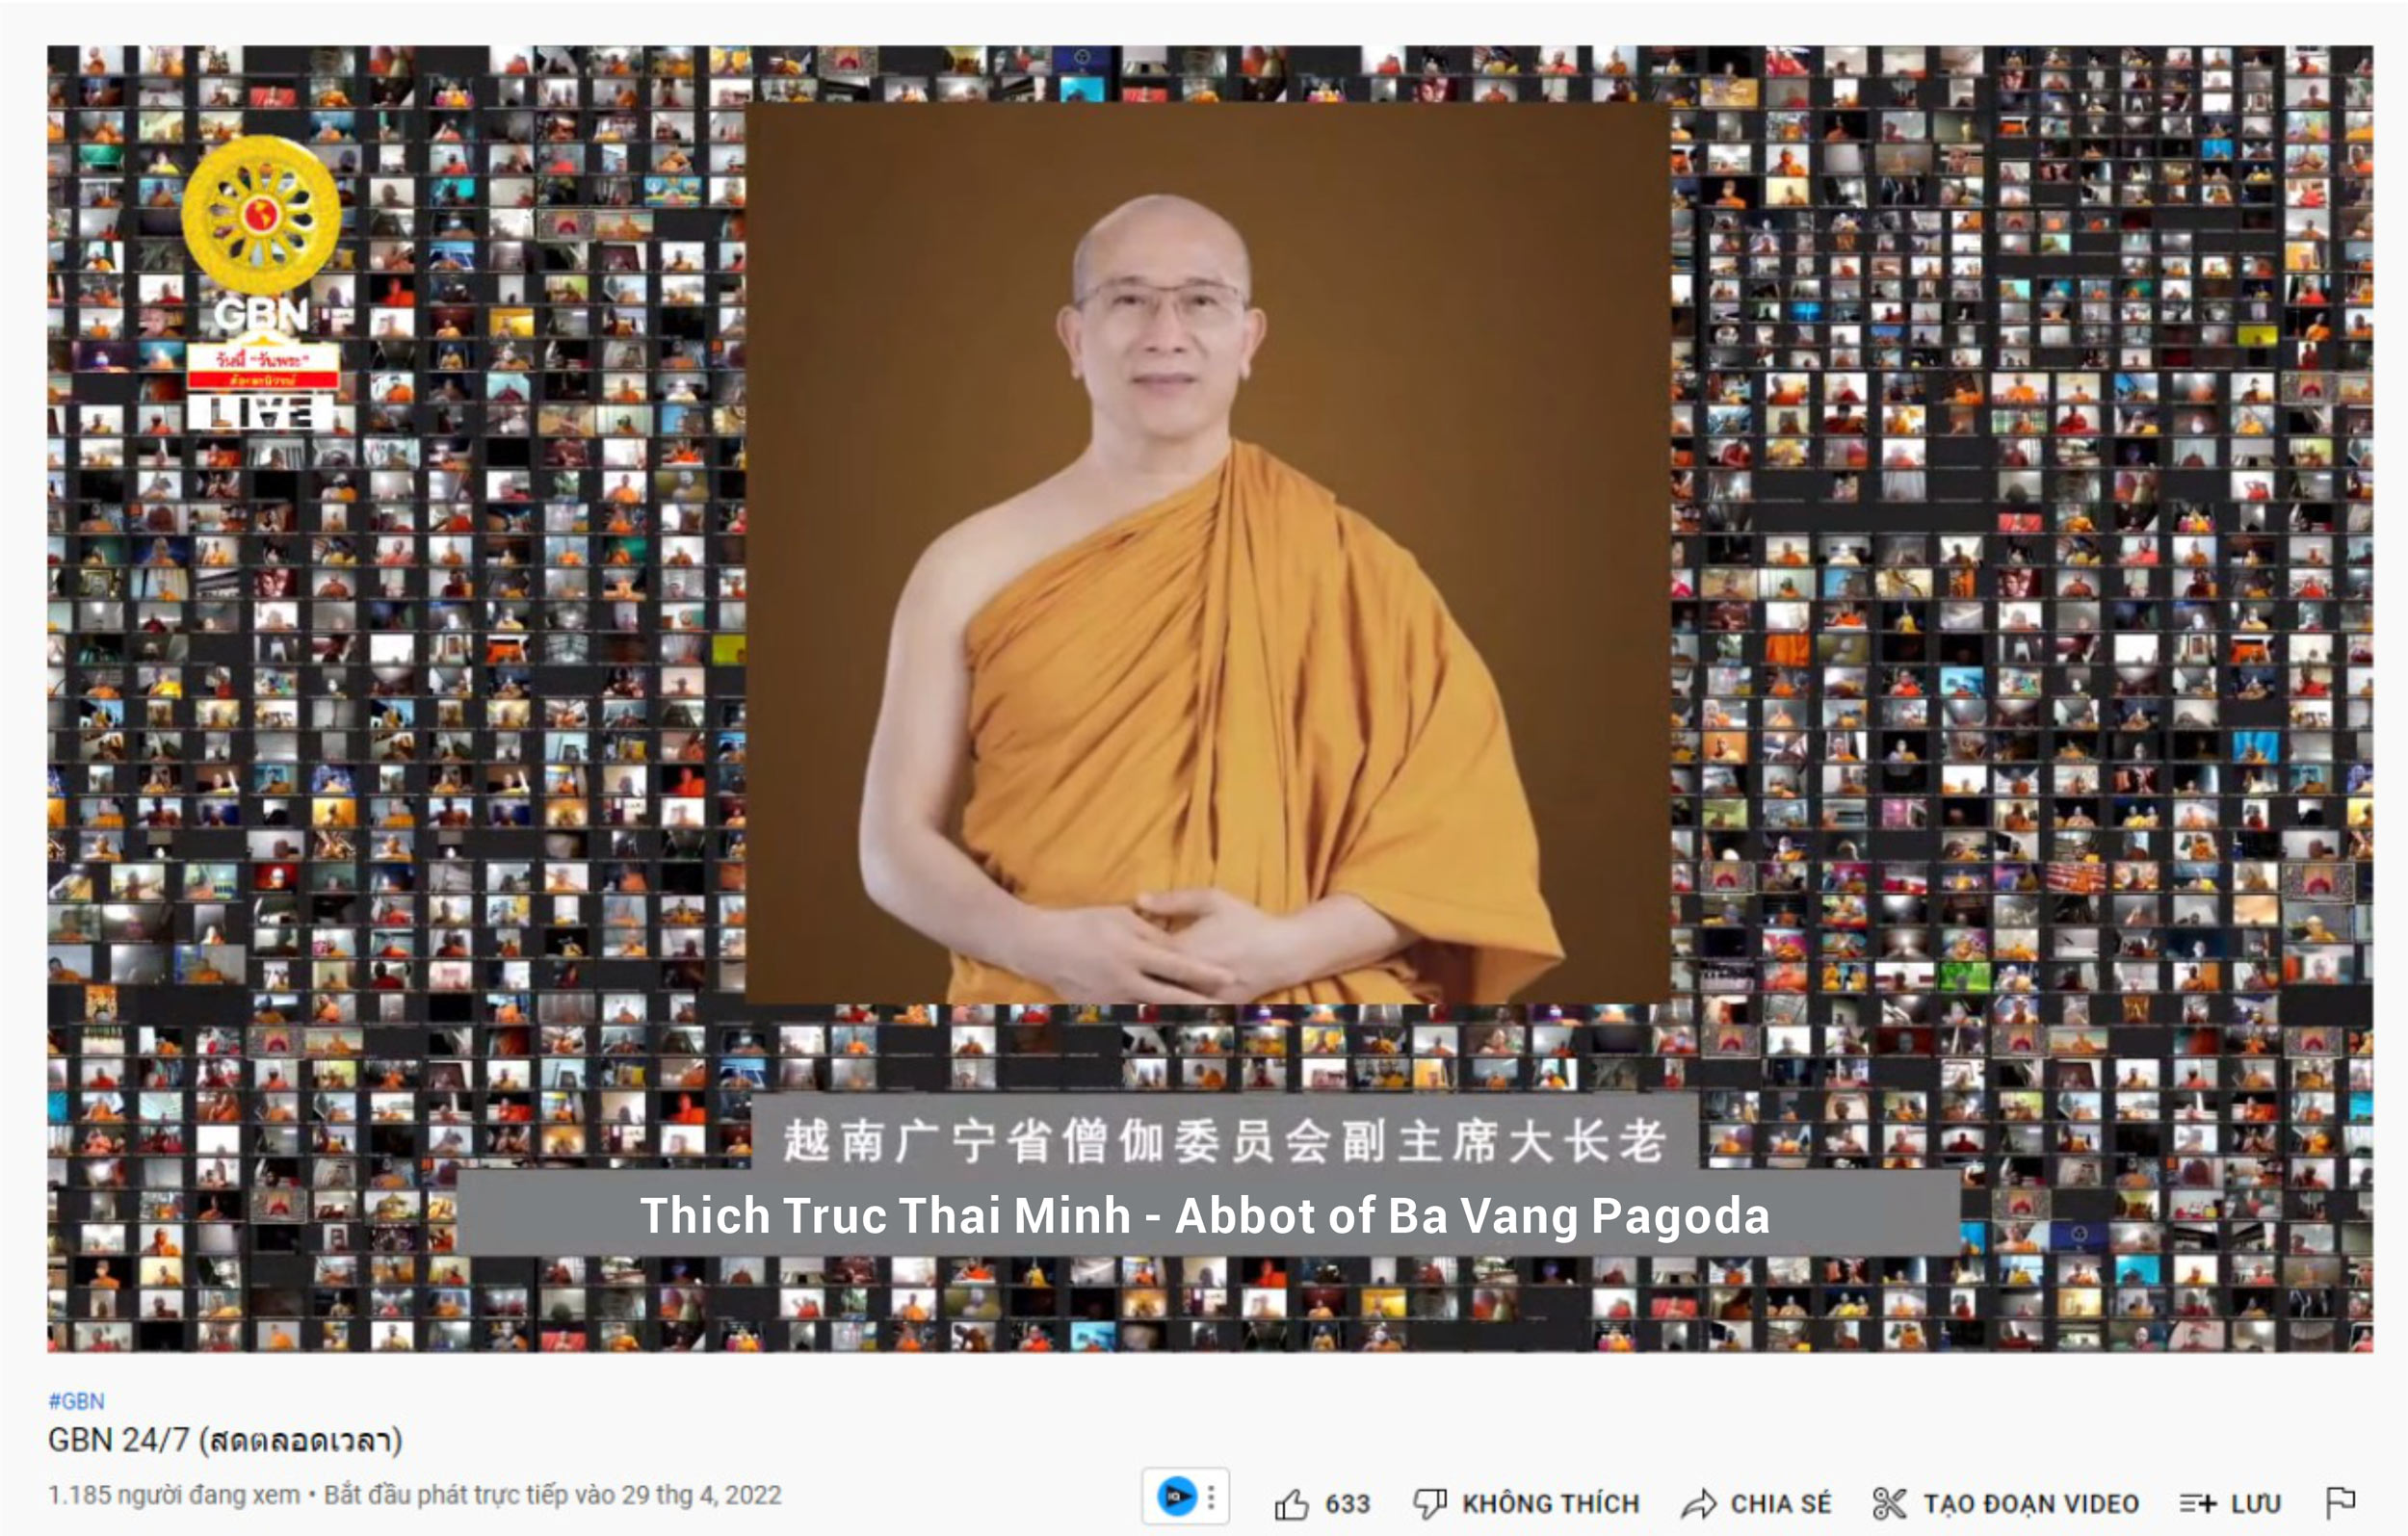 Hình ảnh Thầy Thích Trúc Thái Minh được giới thiệu trên kênh truyền thông của chùa Dhammakaya - Thái Lan